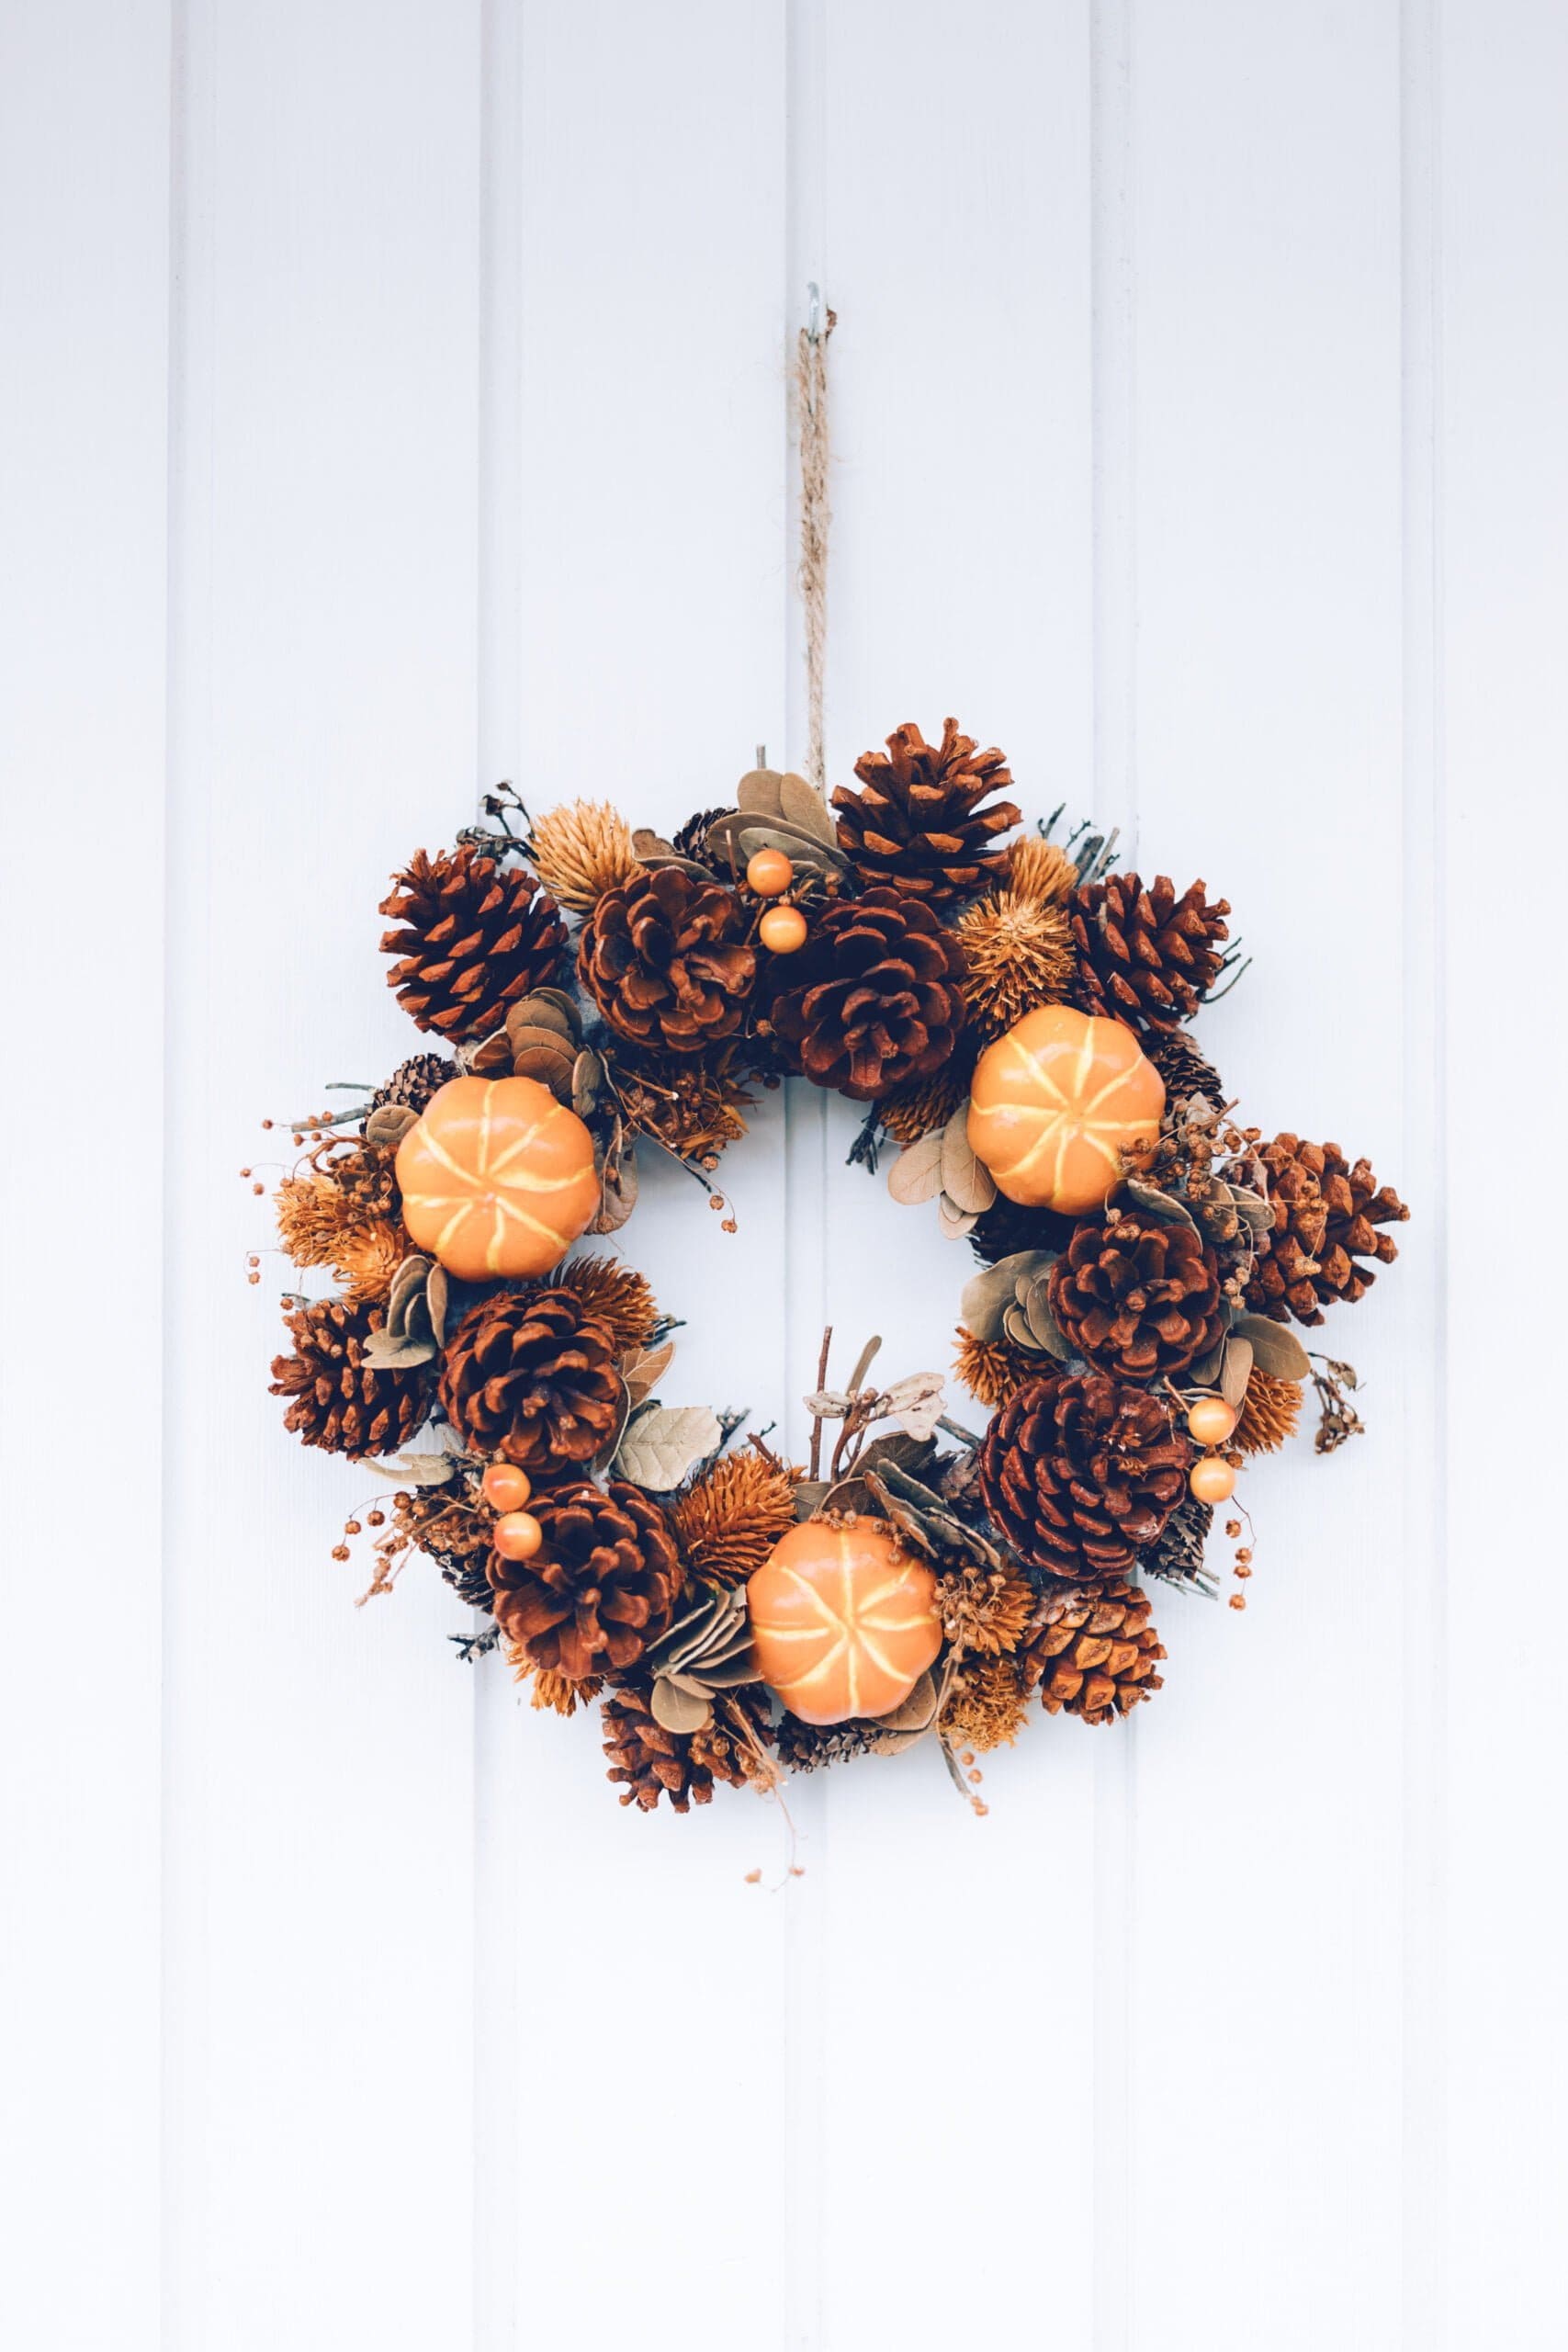 door-wreath-decorated-fall-colors-with-mini-pumpkins-pinecones-white-wooden-door